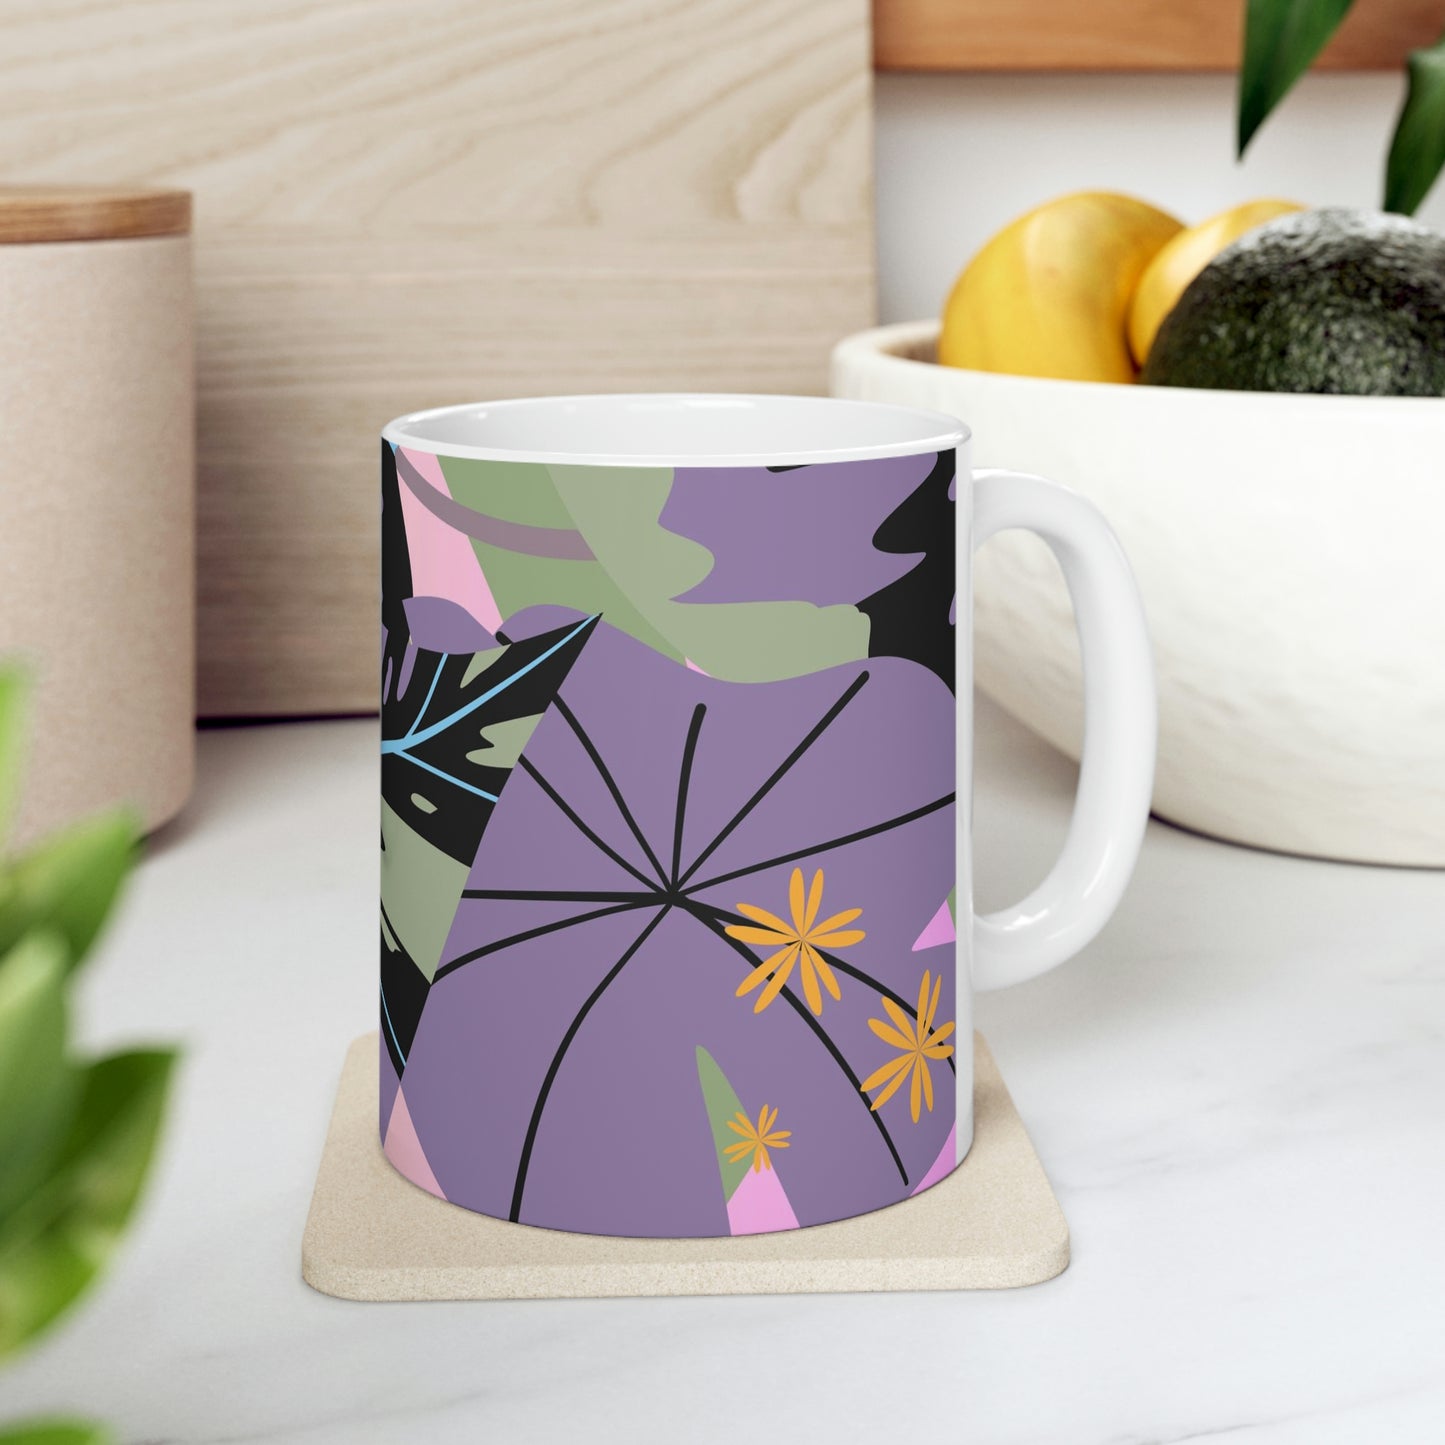 Custom Designed Tropical lavender Jungle Collection Ceramic Mug 11oz